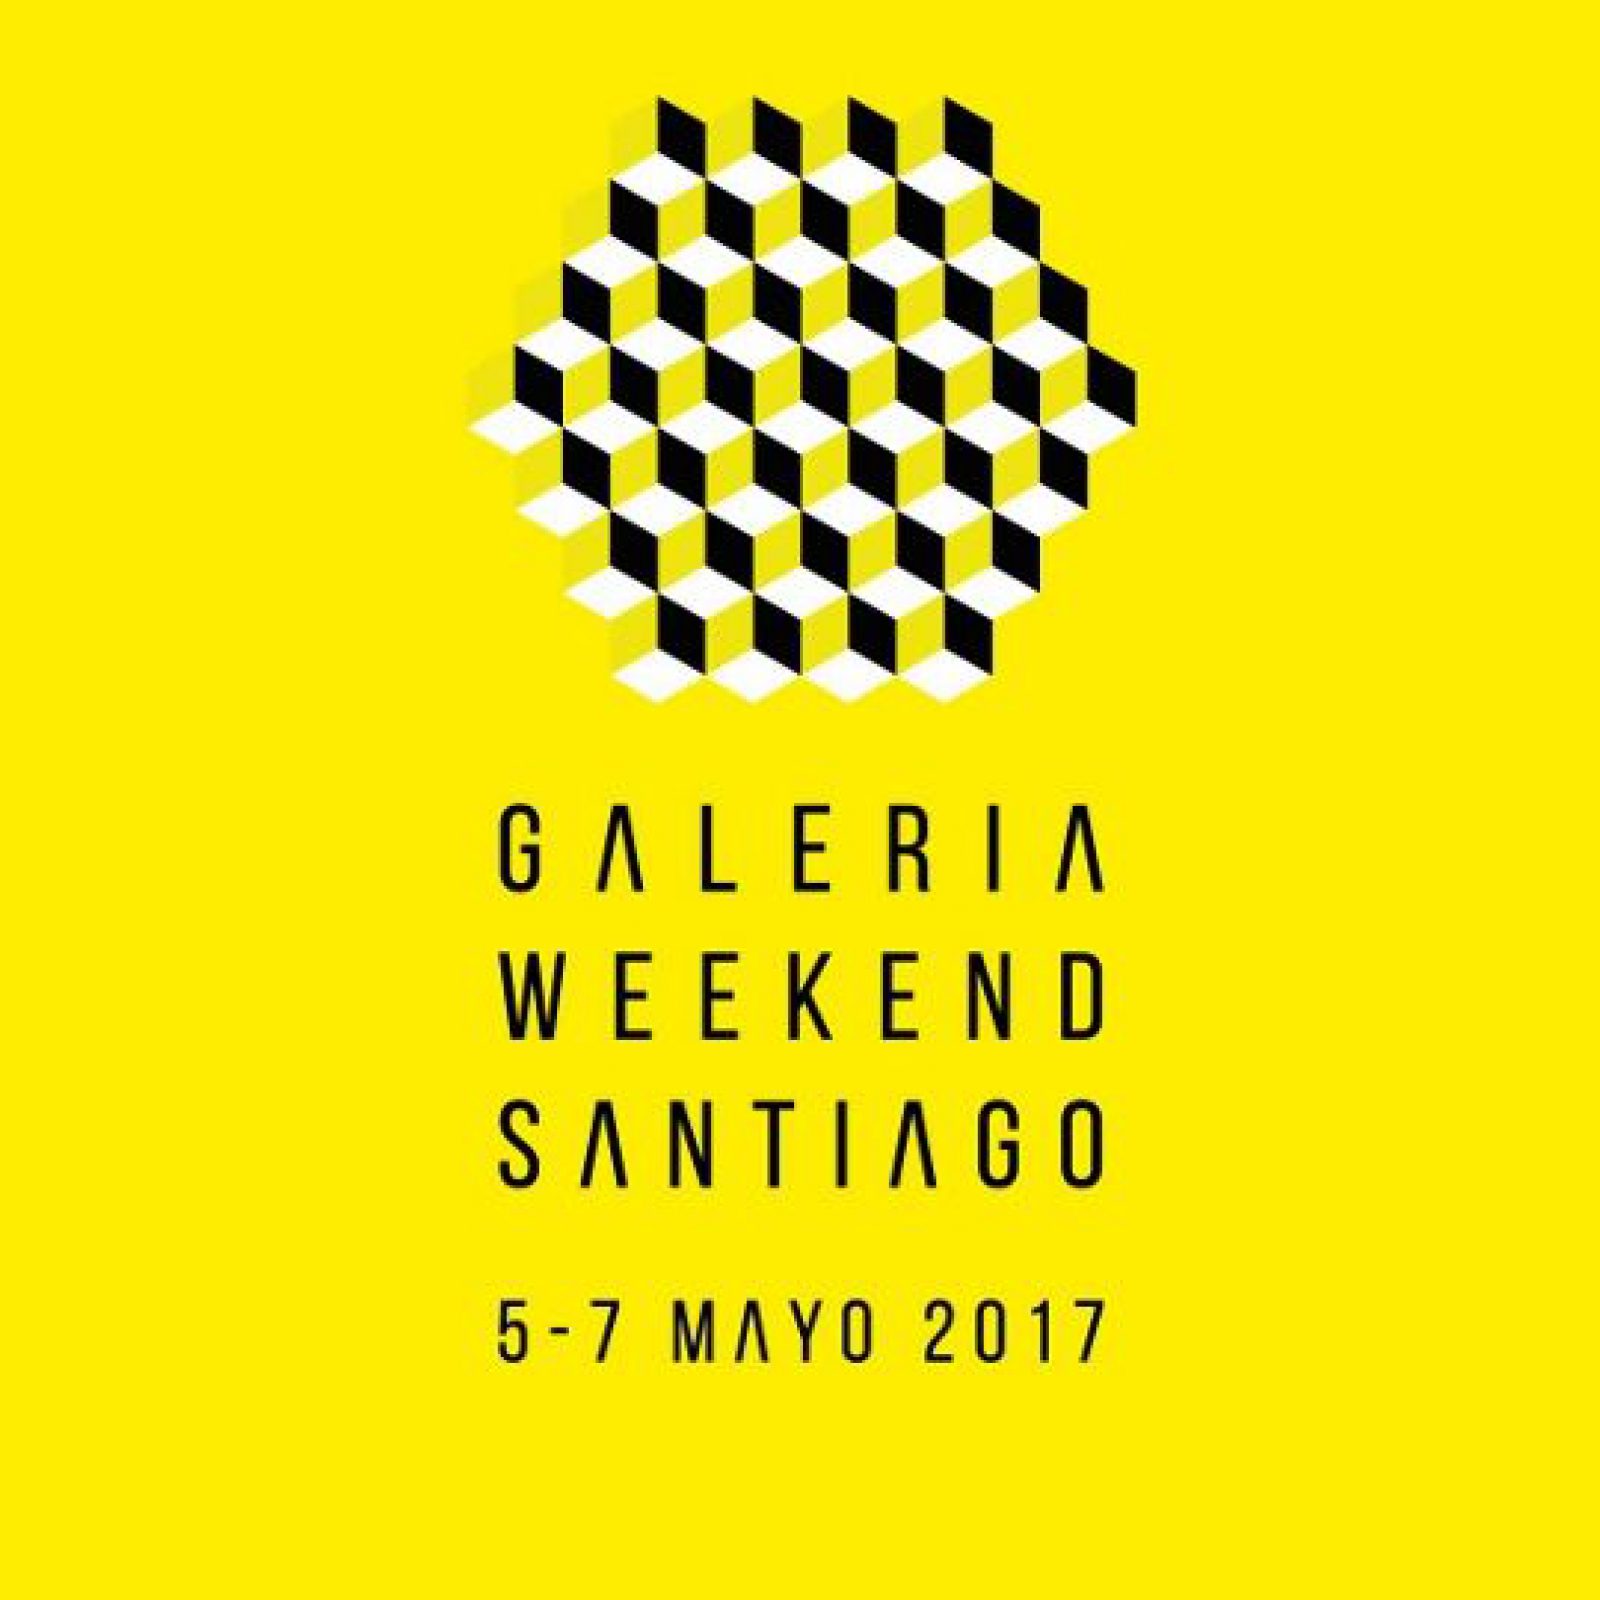 Galería Weekend Santiago